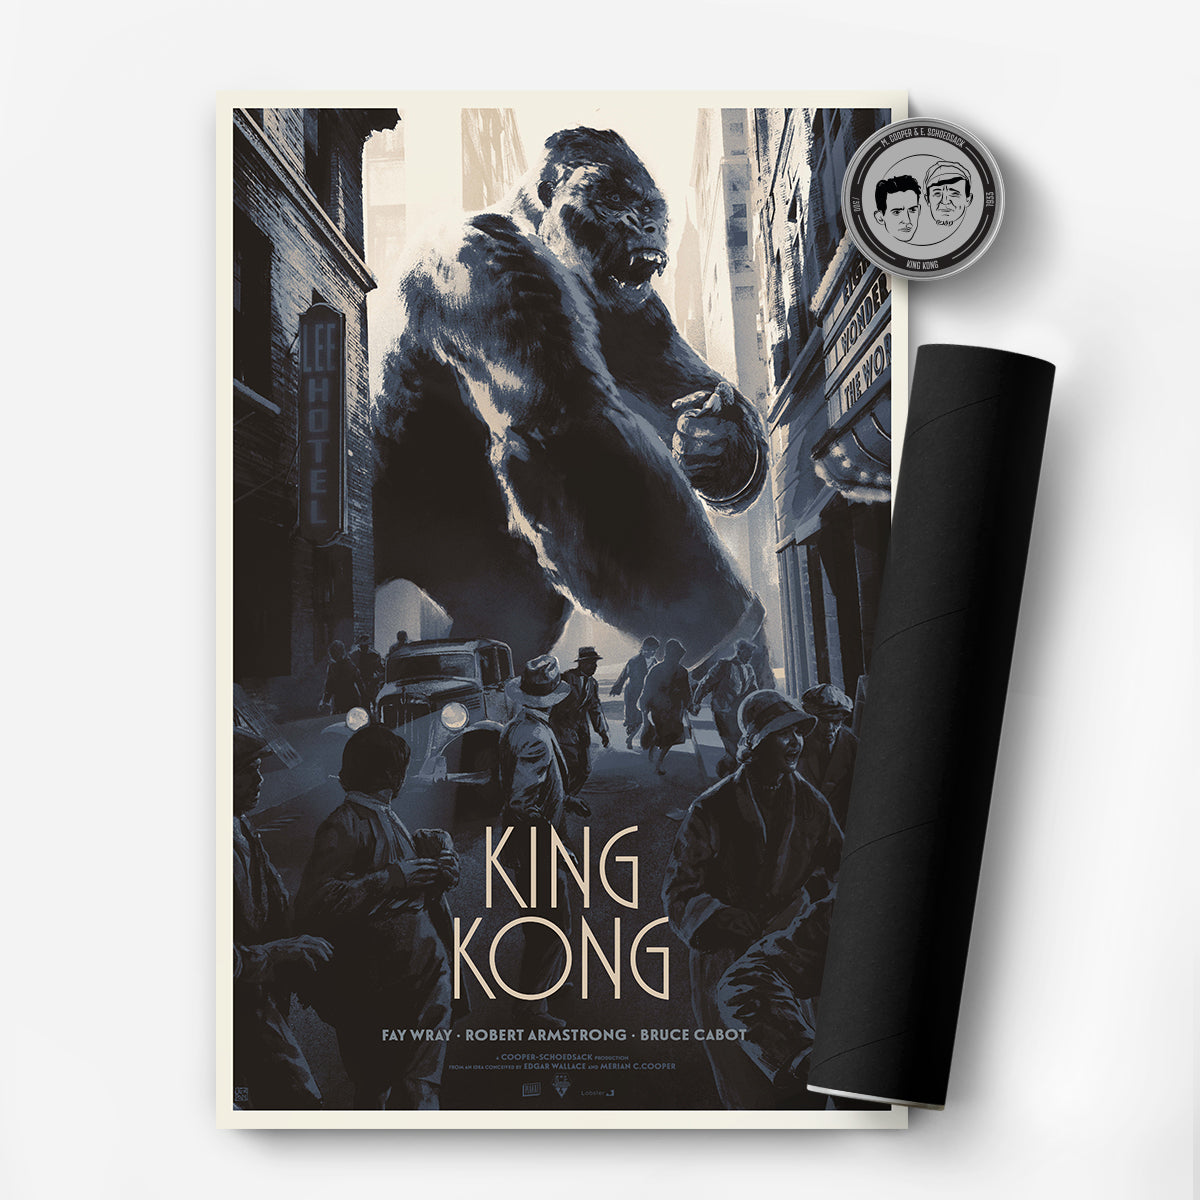 plakat - maison d'edition d'affiche en sérigraphie - affiche de cinema King Kong réalisée par Juan Esteban Rodriguez - chaos dans New York avec king kong - imprimée en edition limitée numérotee main